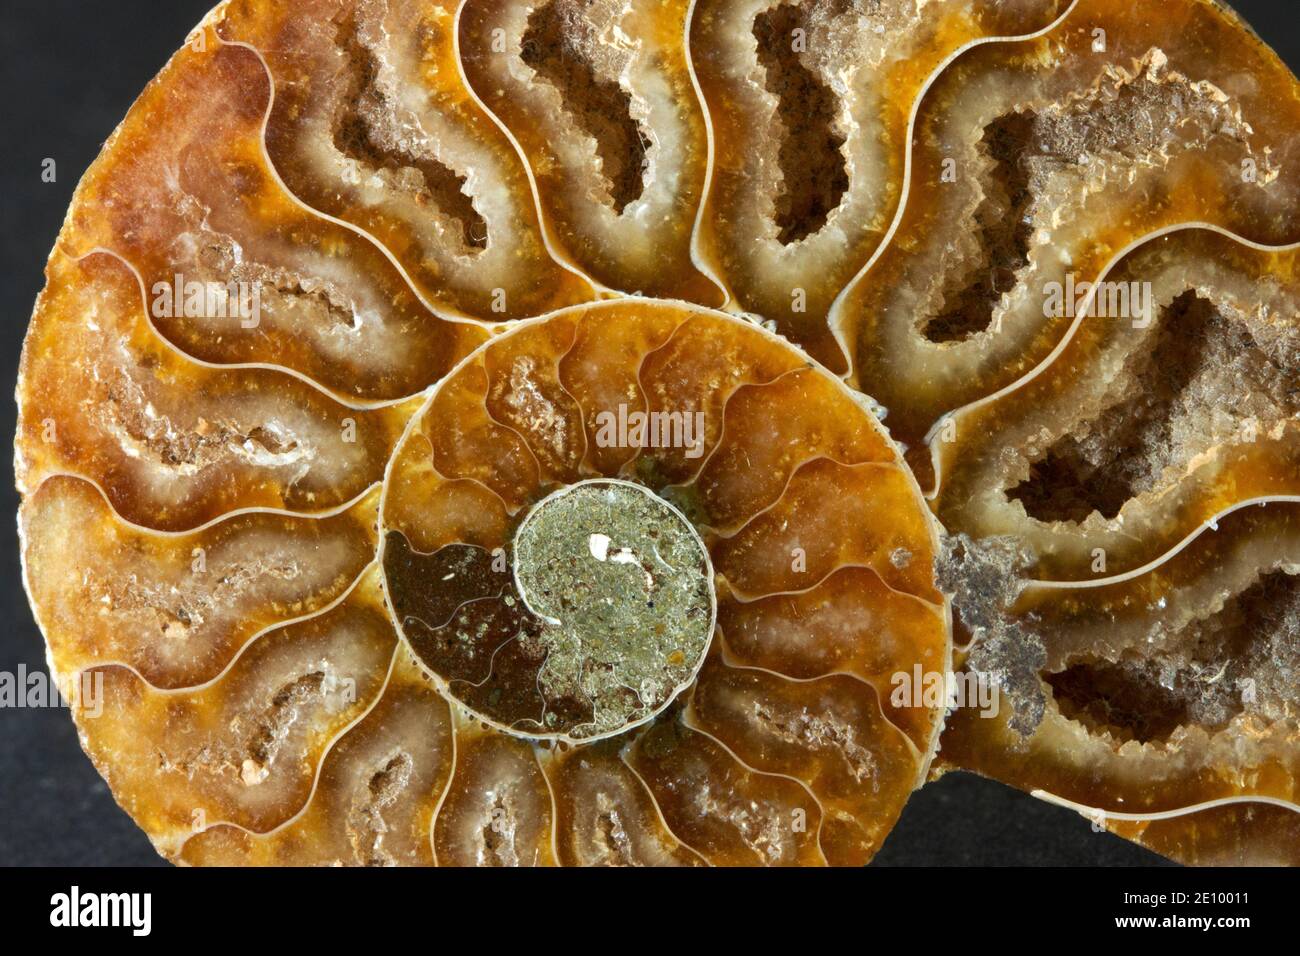 La septa, o cámaras llenas de gas que controlaban la flotabilidad de esta ammonita extinta durante su vida hace 100 millones de años Foto de stock